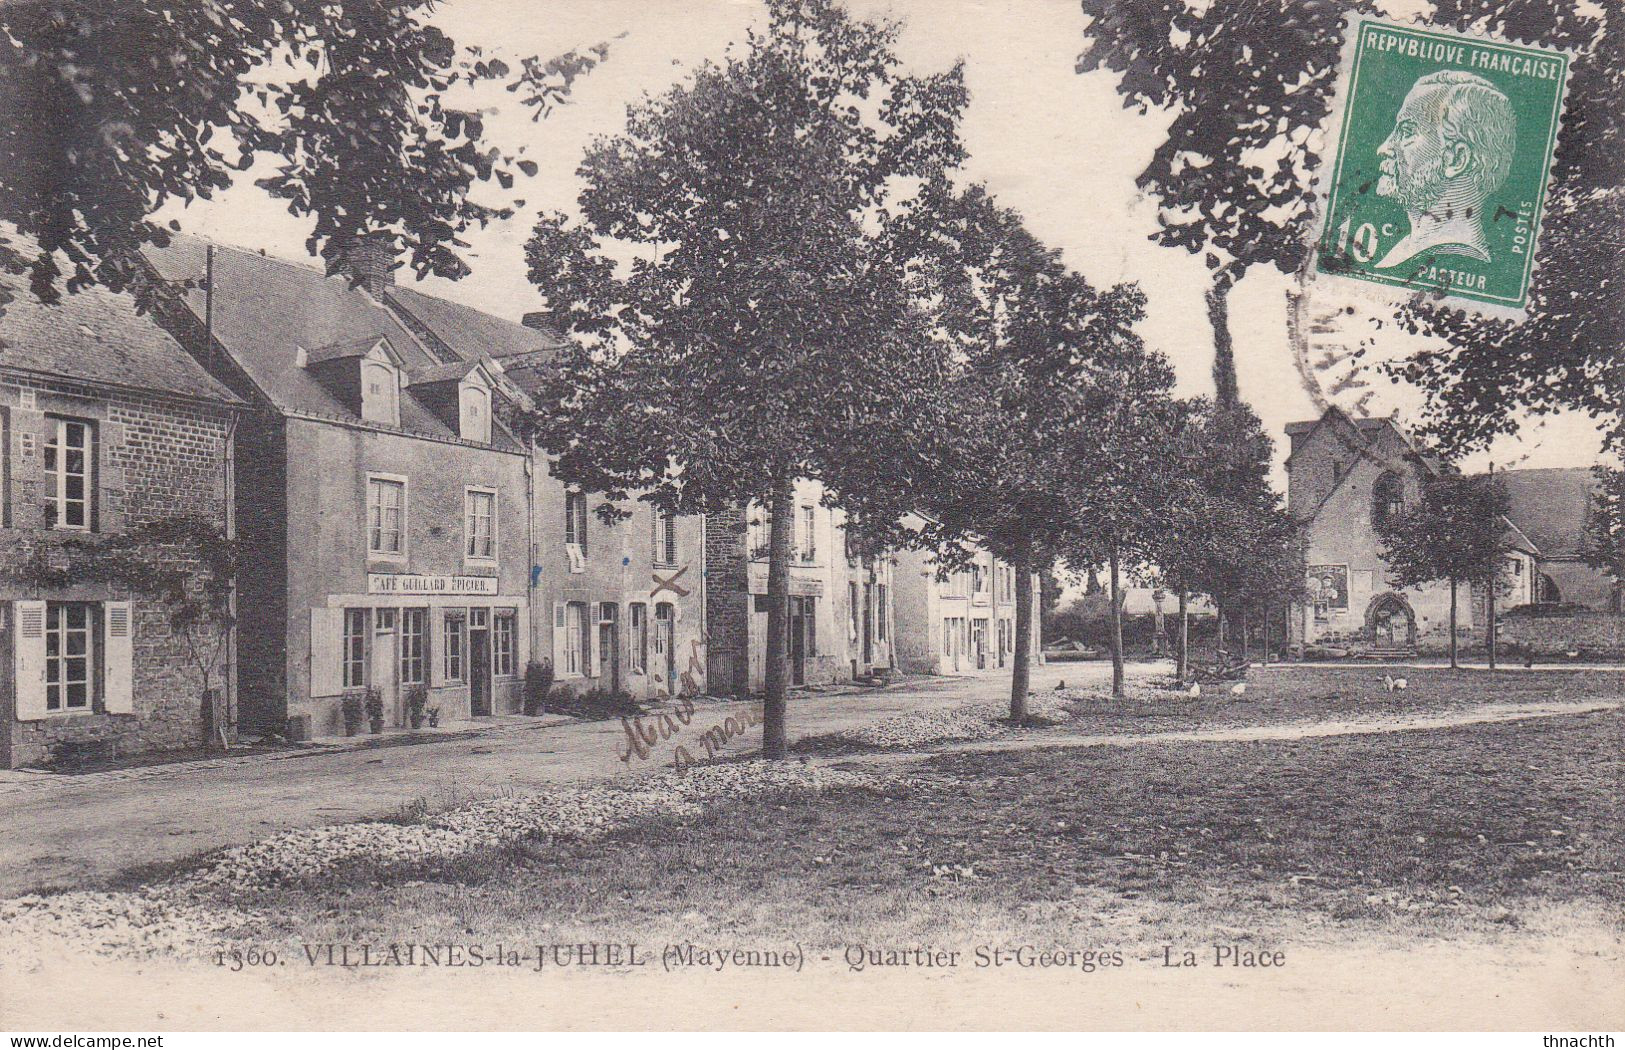 1924 VILLAINES LA JUHEL Quartier St Georges La Place Commerçe - Villaines La Juhel